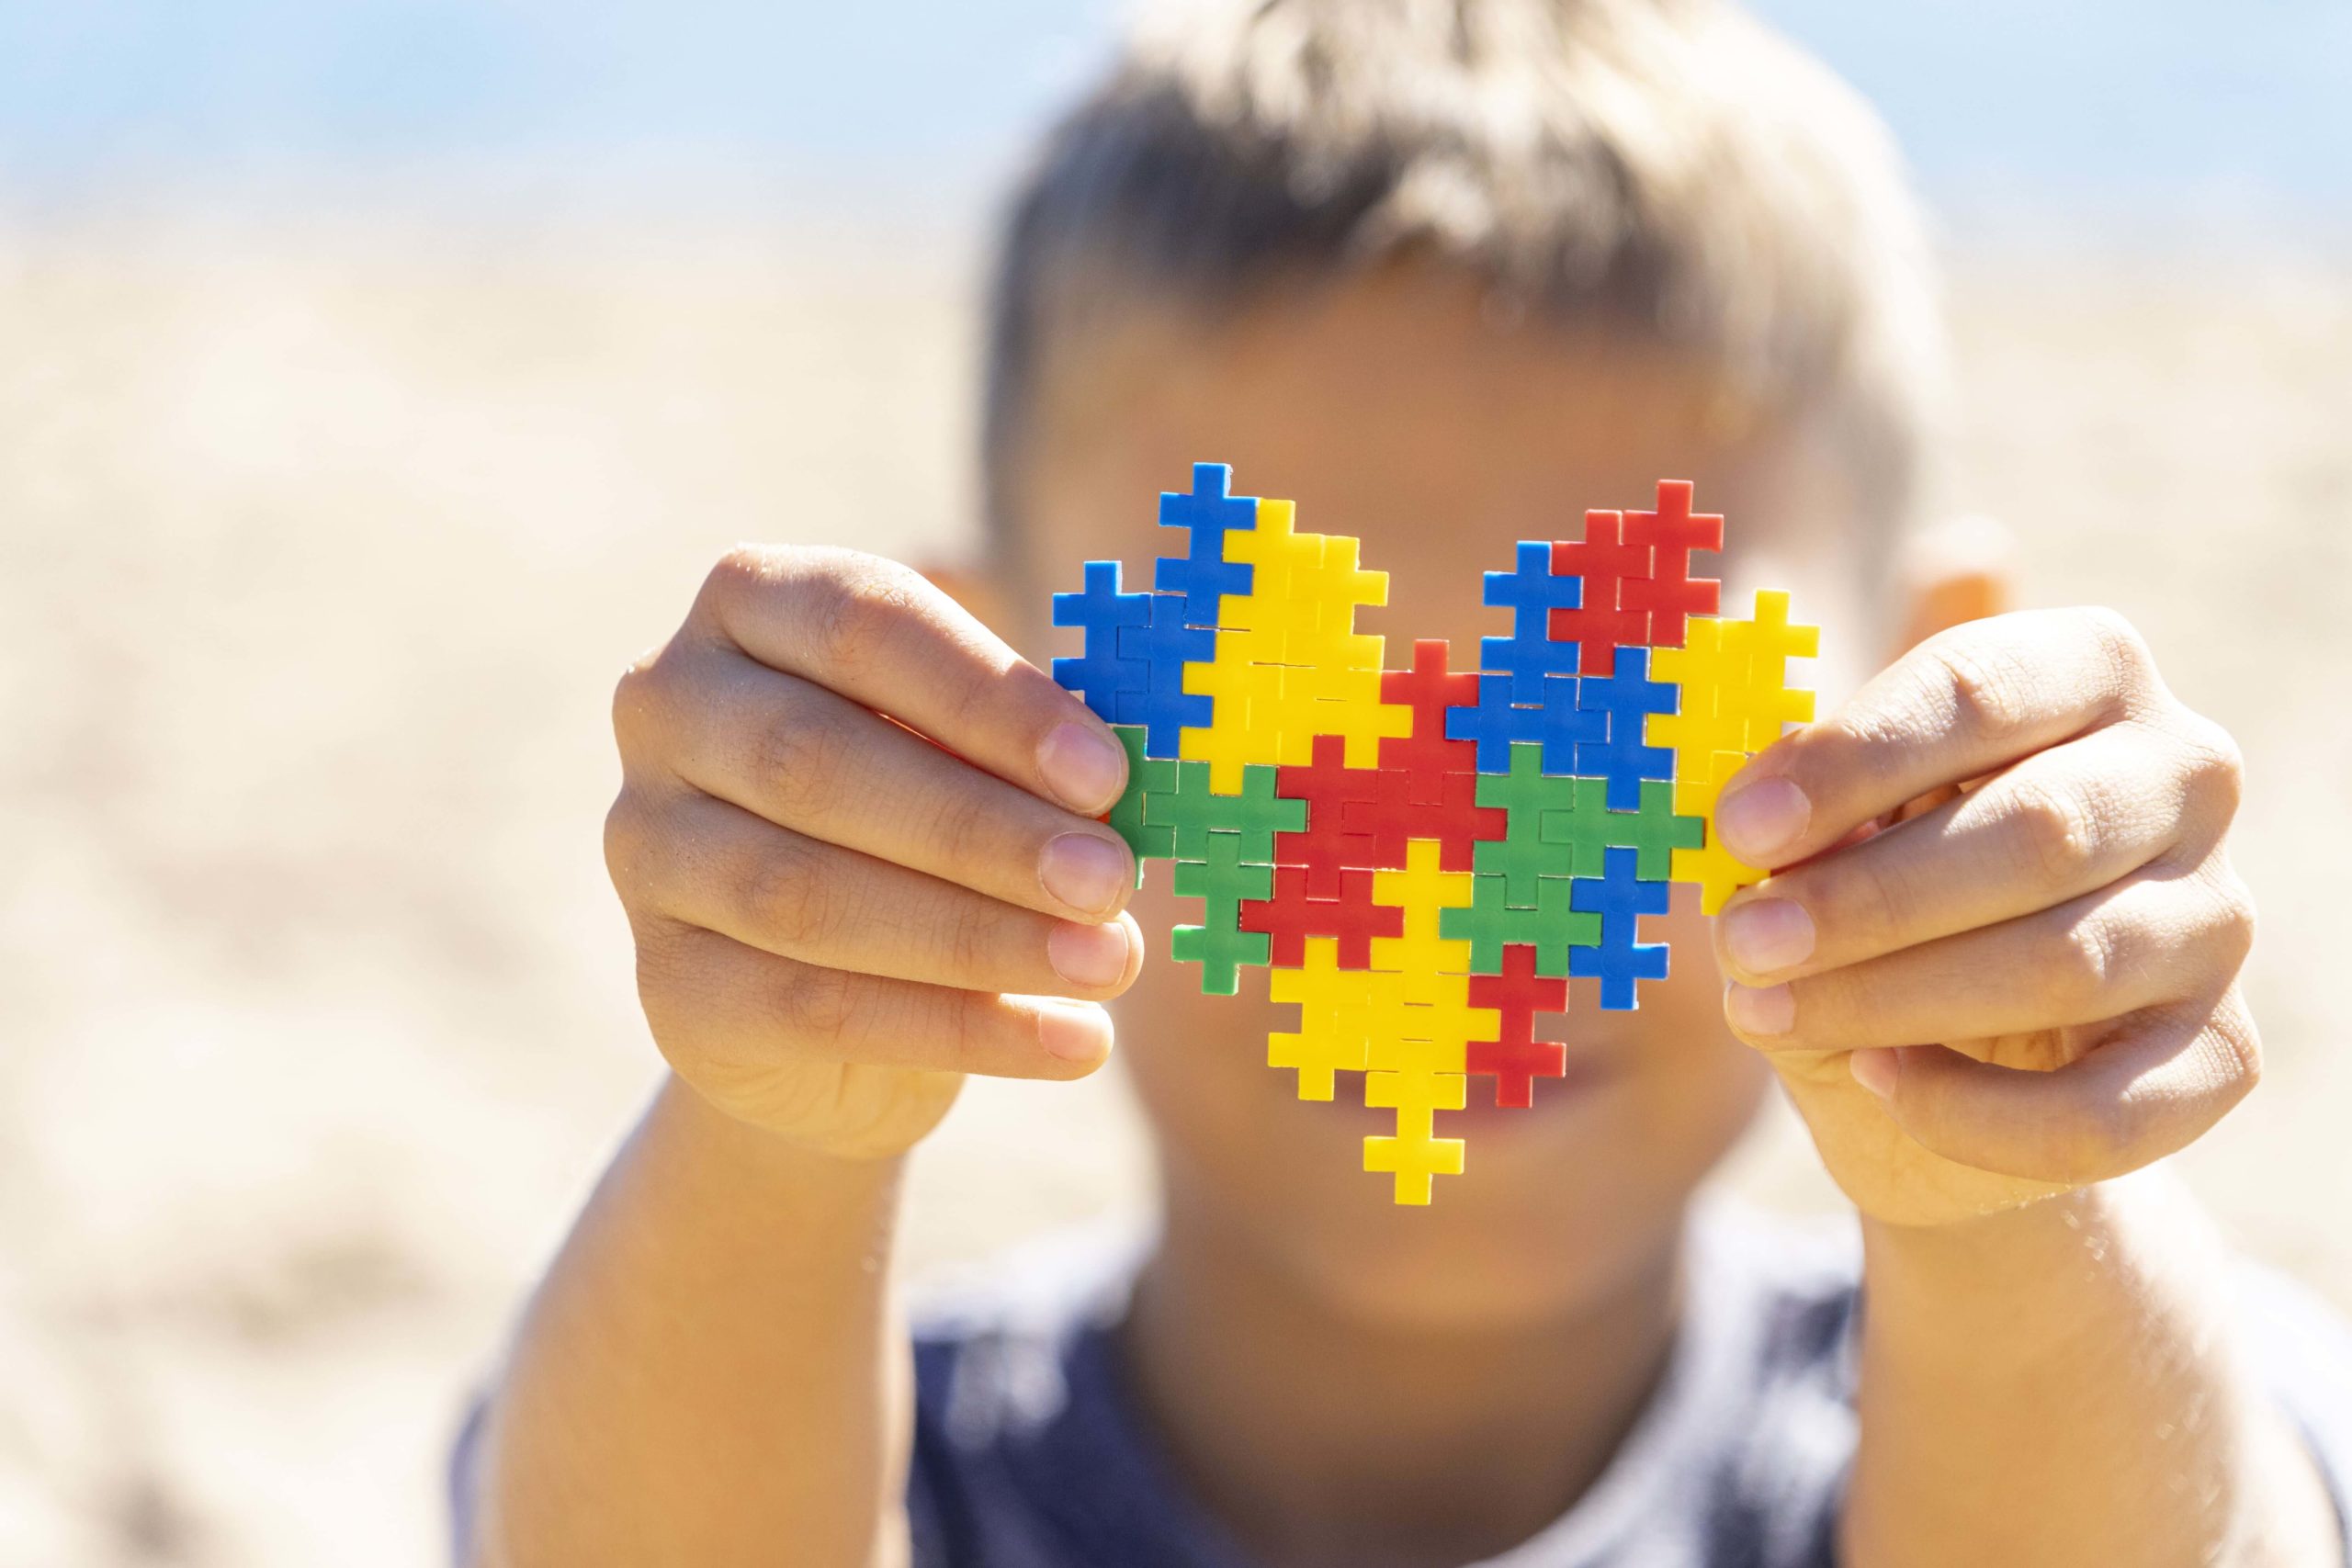 Cerca de 25% dos transtornos de espectro autista são causados por condição genética. Em alguns casos, podem ser acompanhados por doenças metabólicas